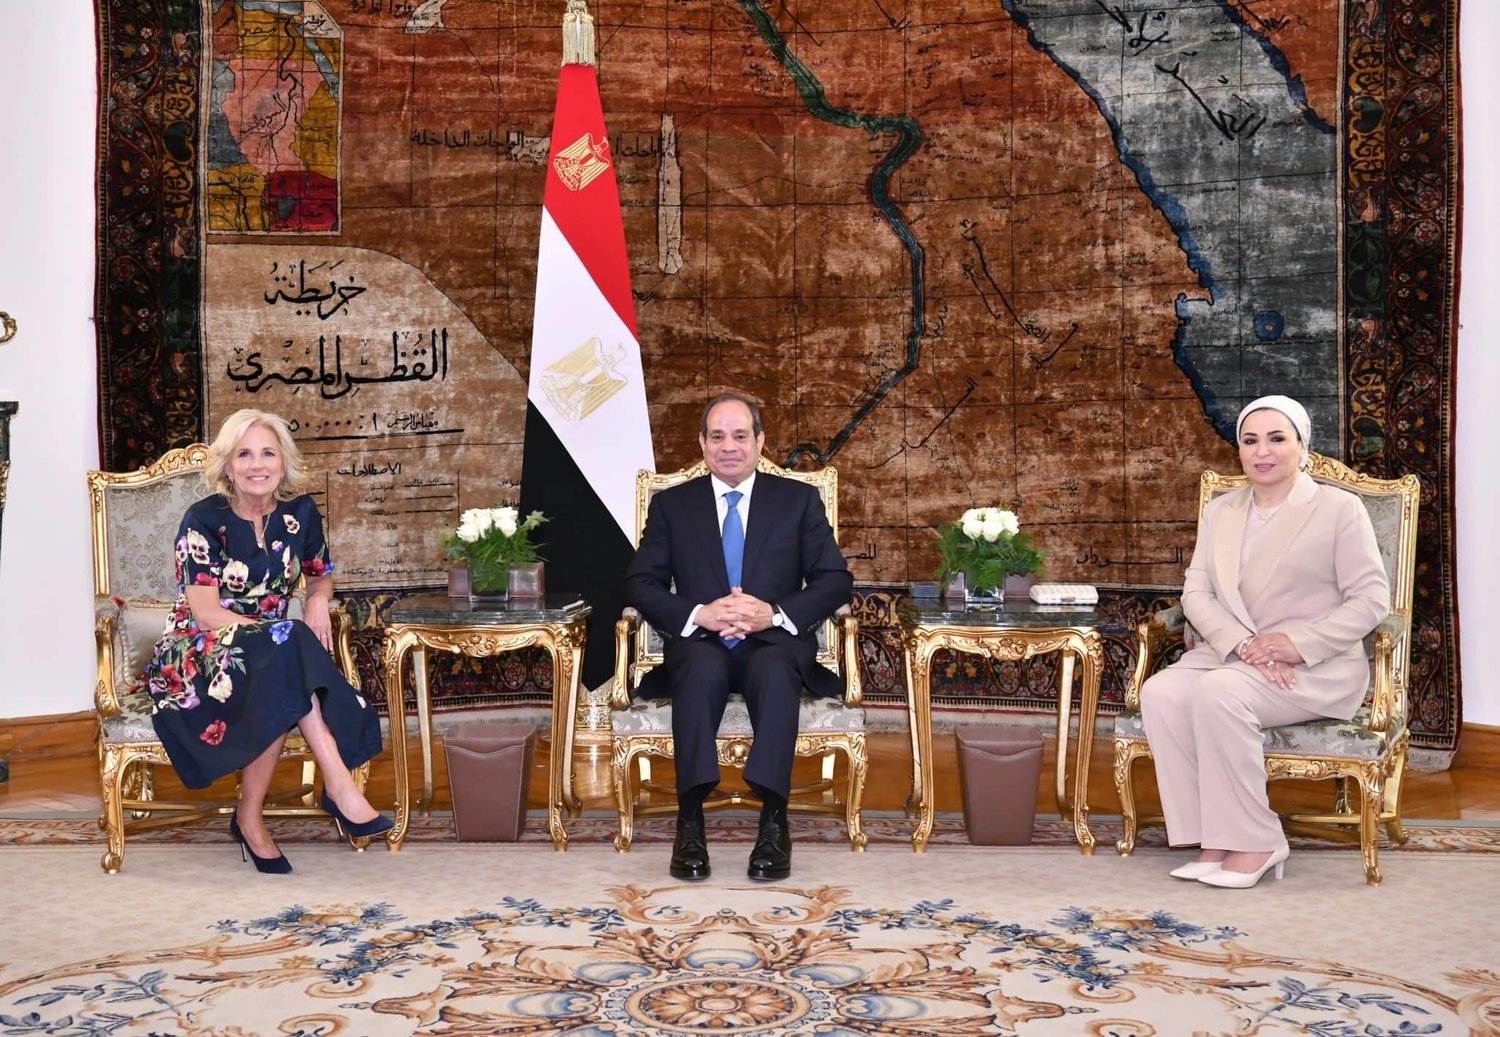 Mısır Cumhurbaşkanı Abdulfettah es-Sisi ve eşi, Kahire’de ABD Başkanı Joe Biden’ın eşi Jill Biden’ı kabul etti (Mısır Cumhurbaşkanlığı)